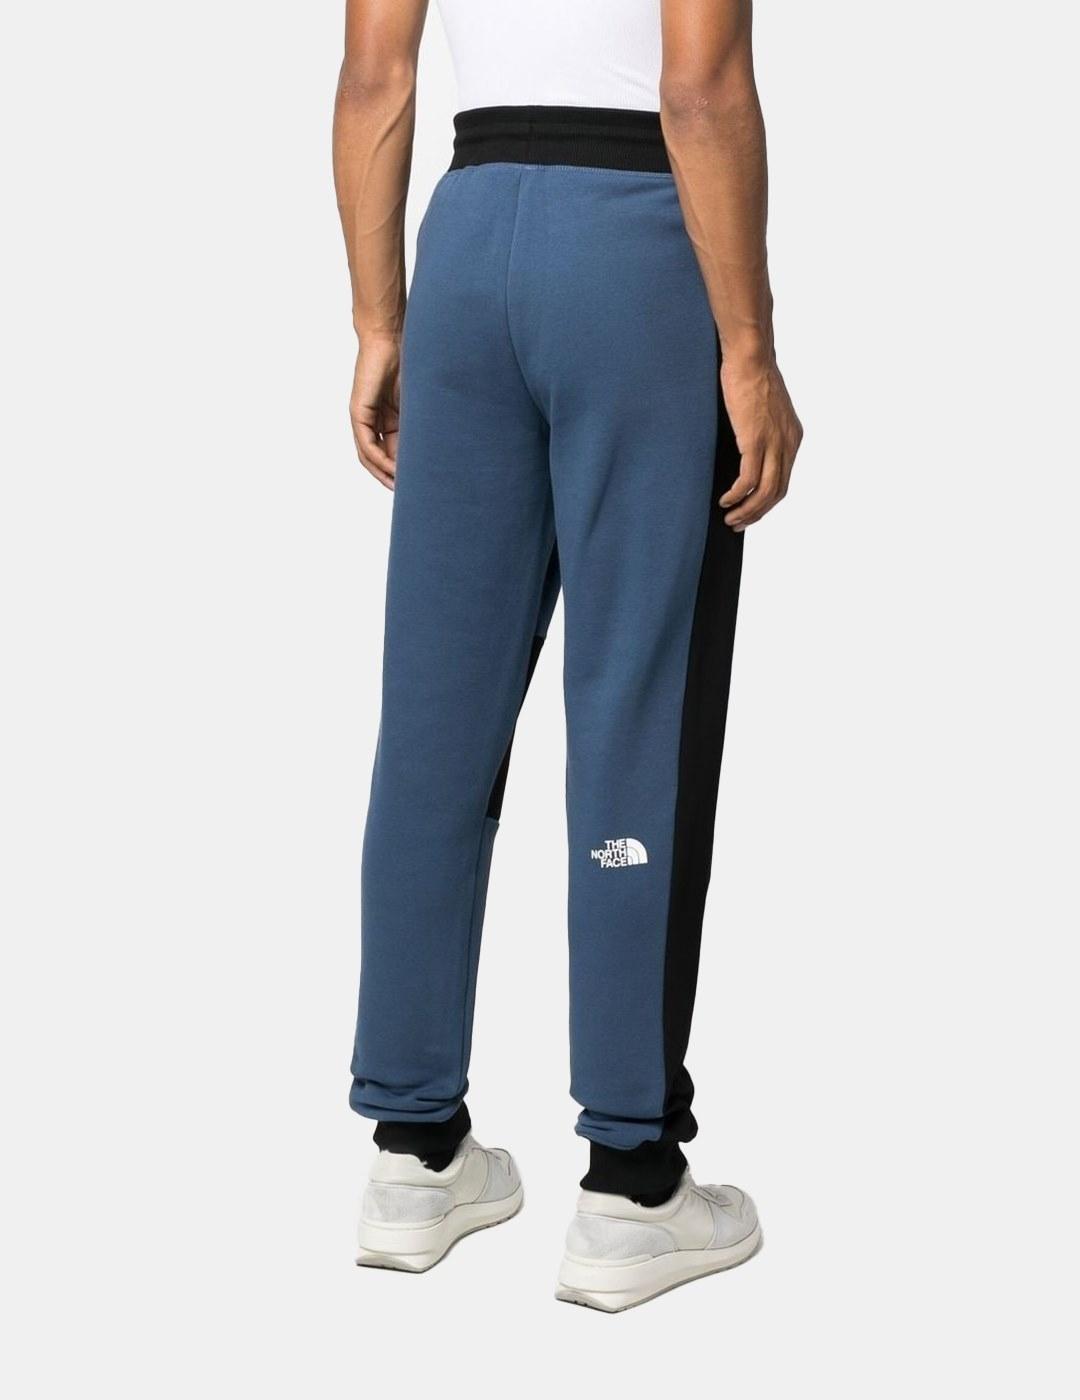 Pantalones The North Face Icon Shady Azul